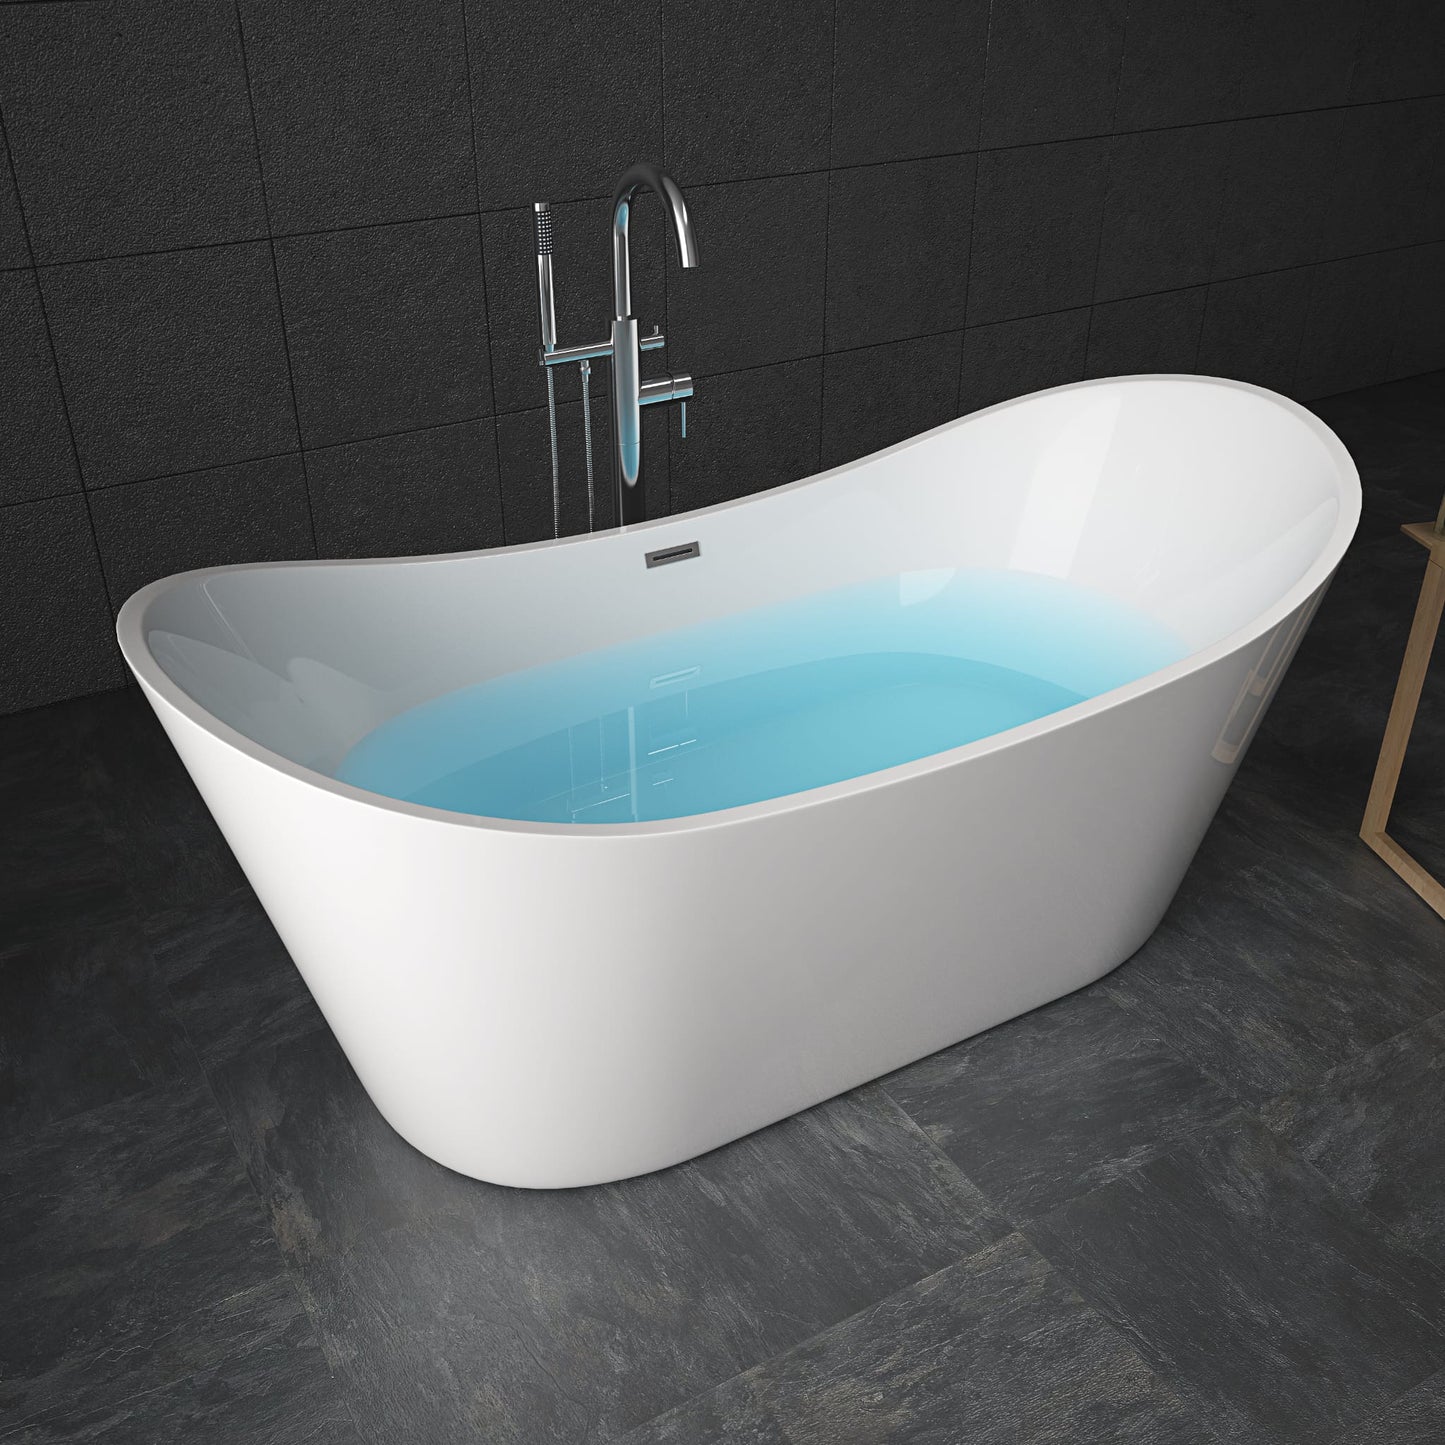 RL-MF-1202 Free standing bath tub